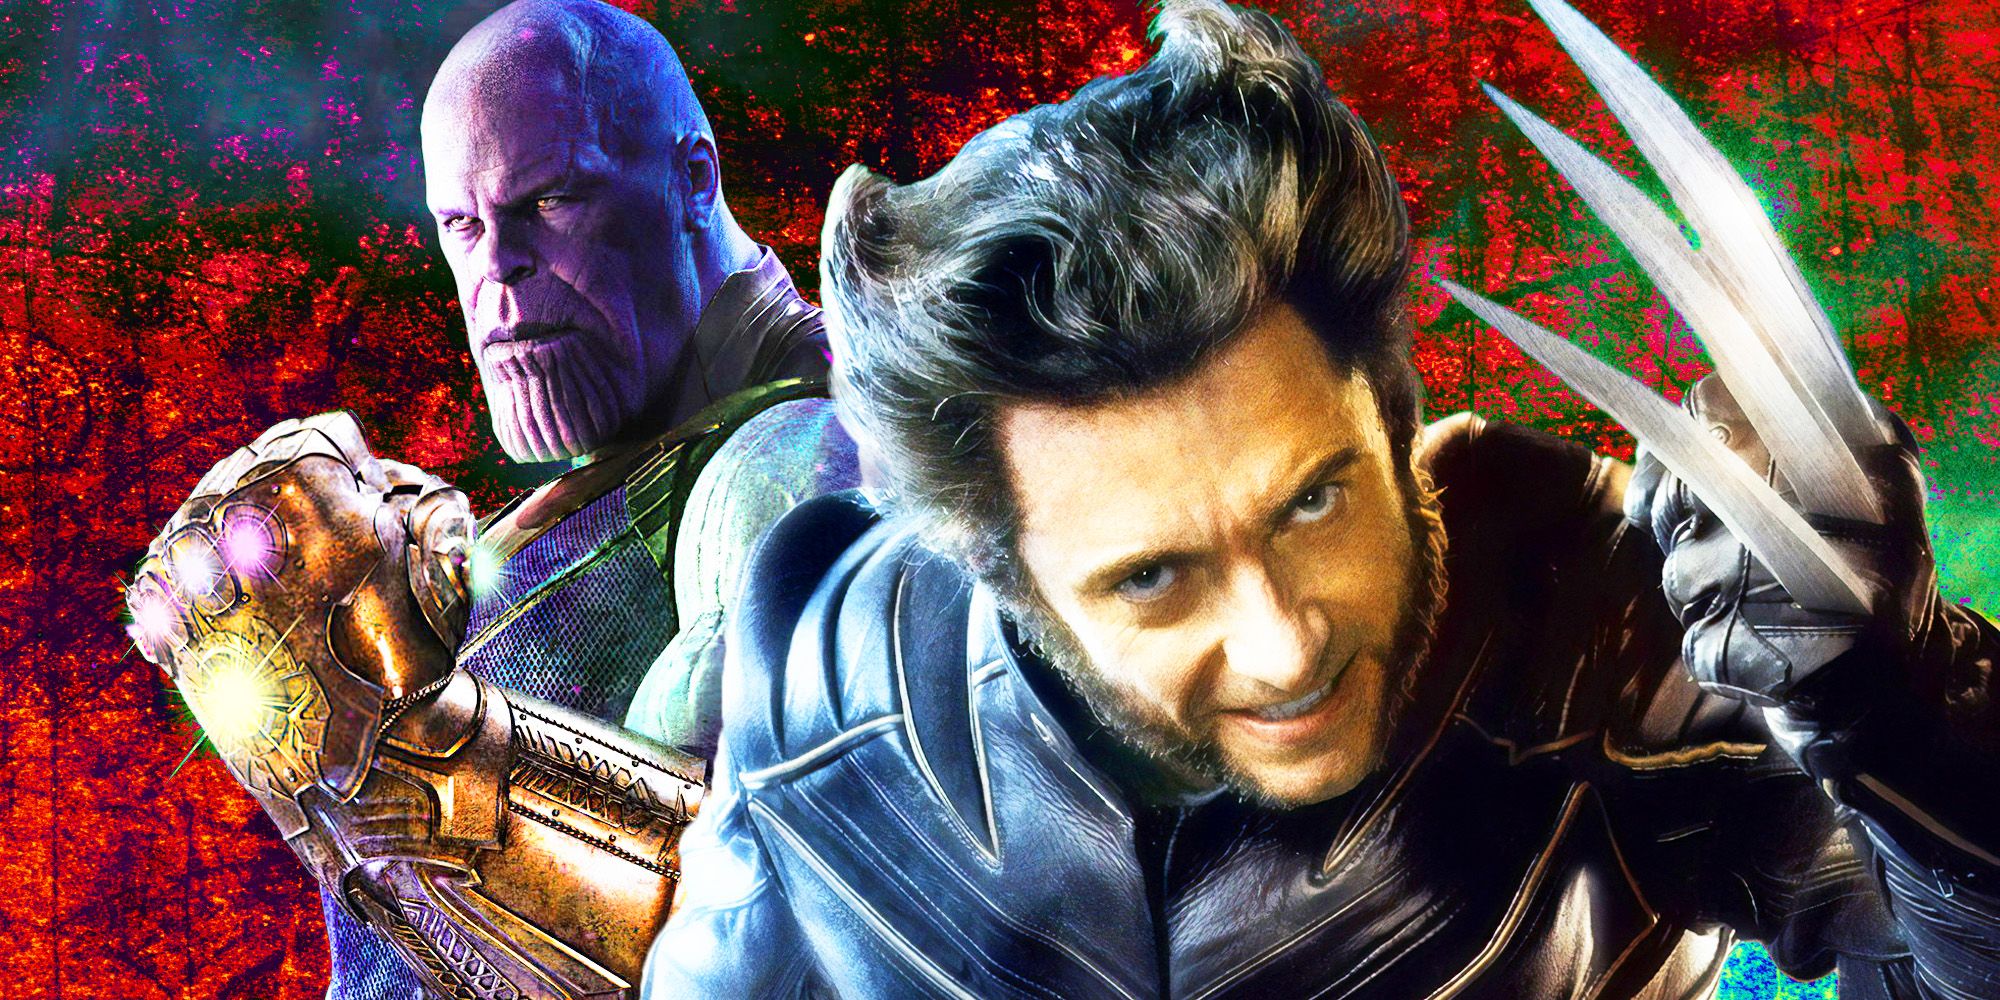 Las películas de X-Men hicieron Infinity War de Thanos 11 años antes y casi acaban con la franquicia